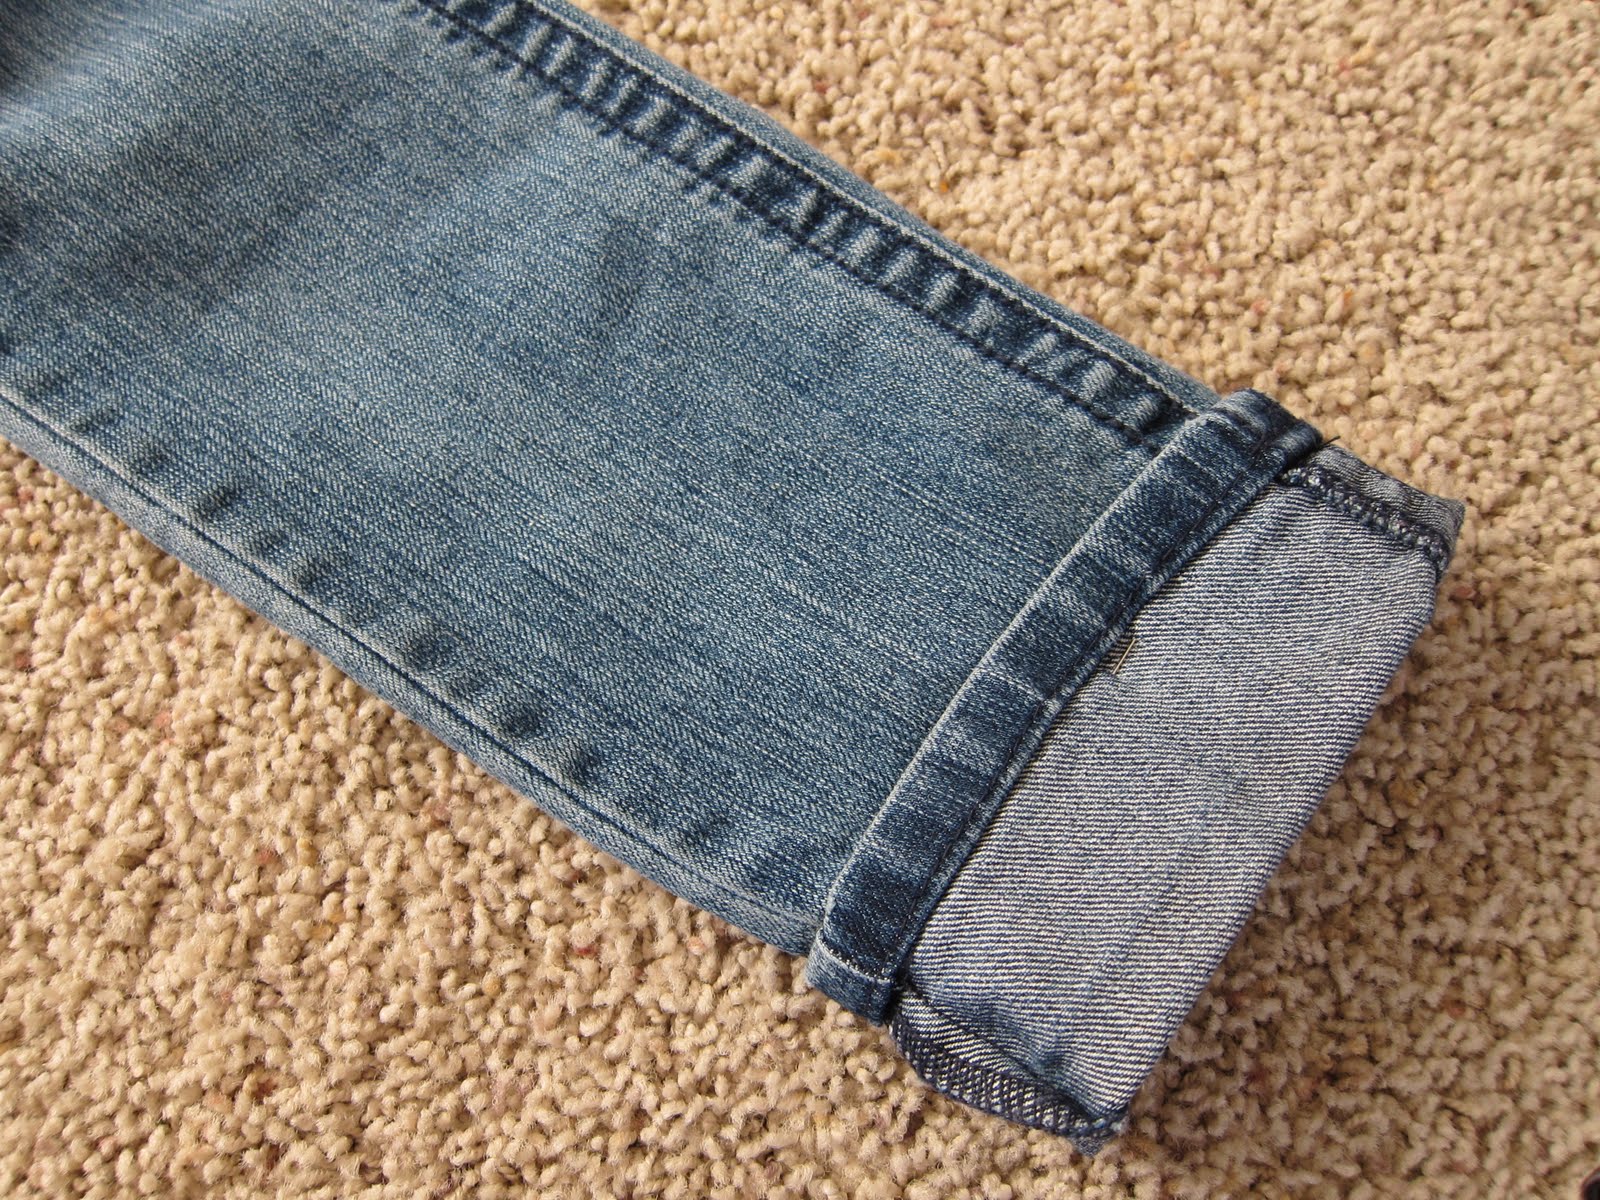 Как правильно подшить джинсы с сохранением низа. Подшивание джинсов. Подгибка джинс. Подшить джинсы. Подгибка джинс с сохранением фабричного шва.